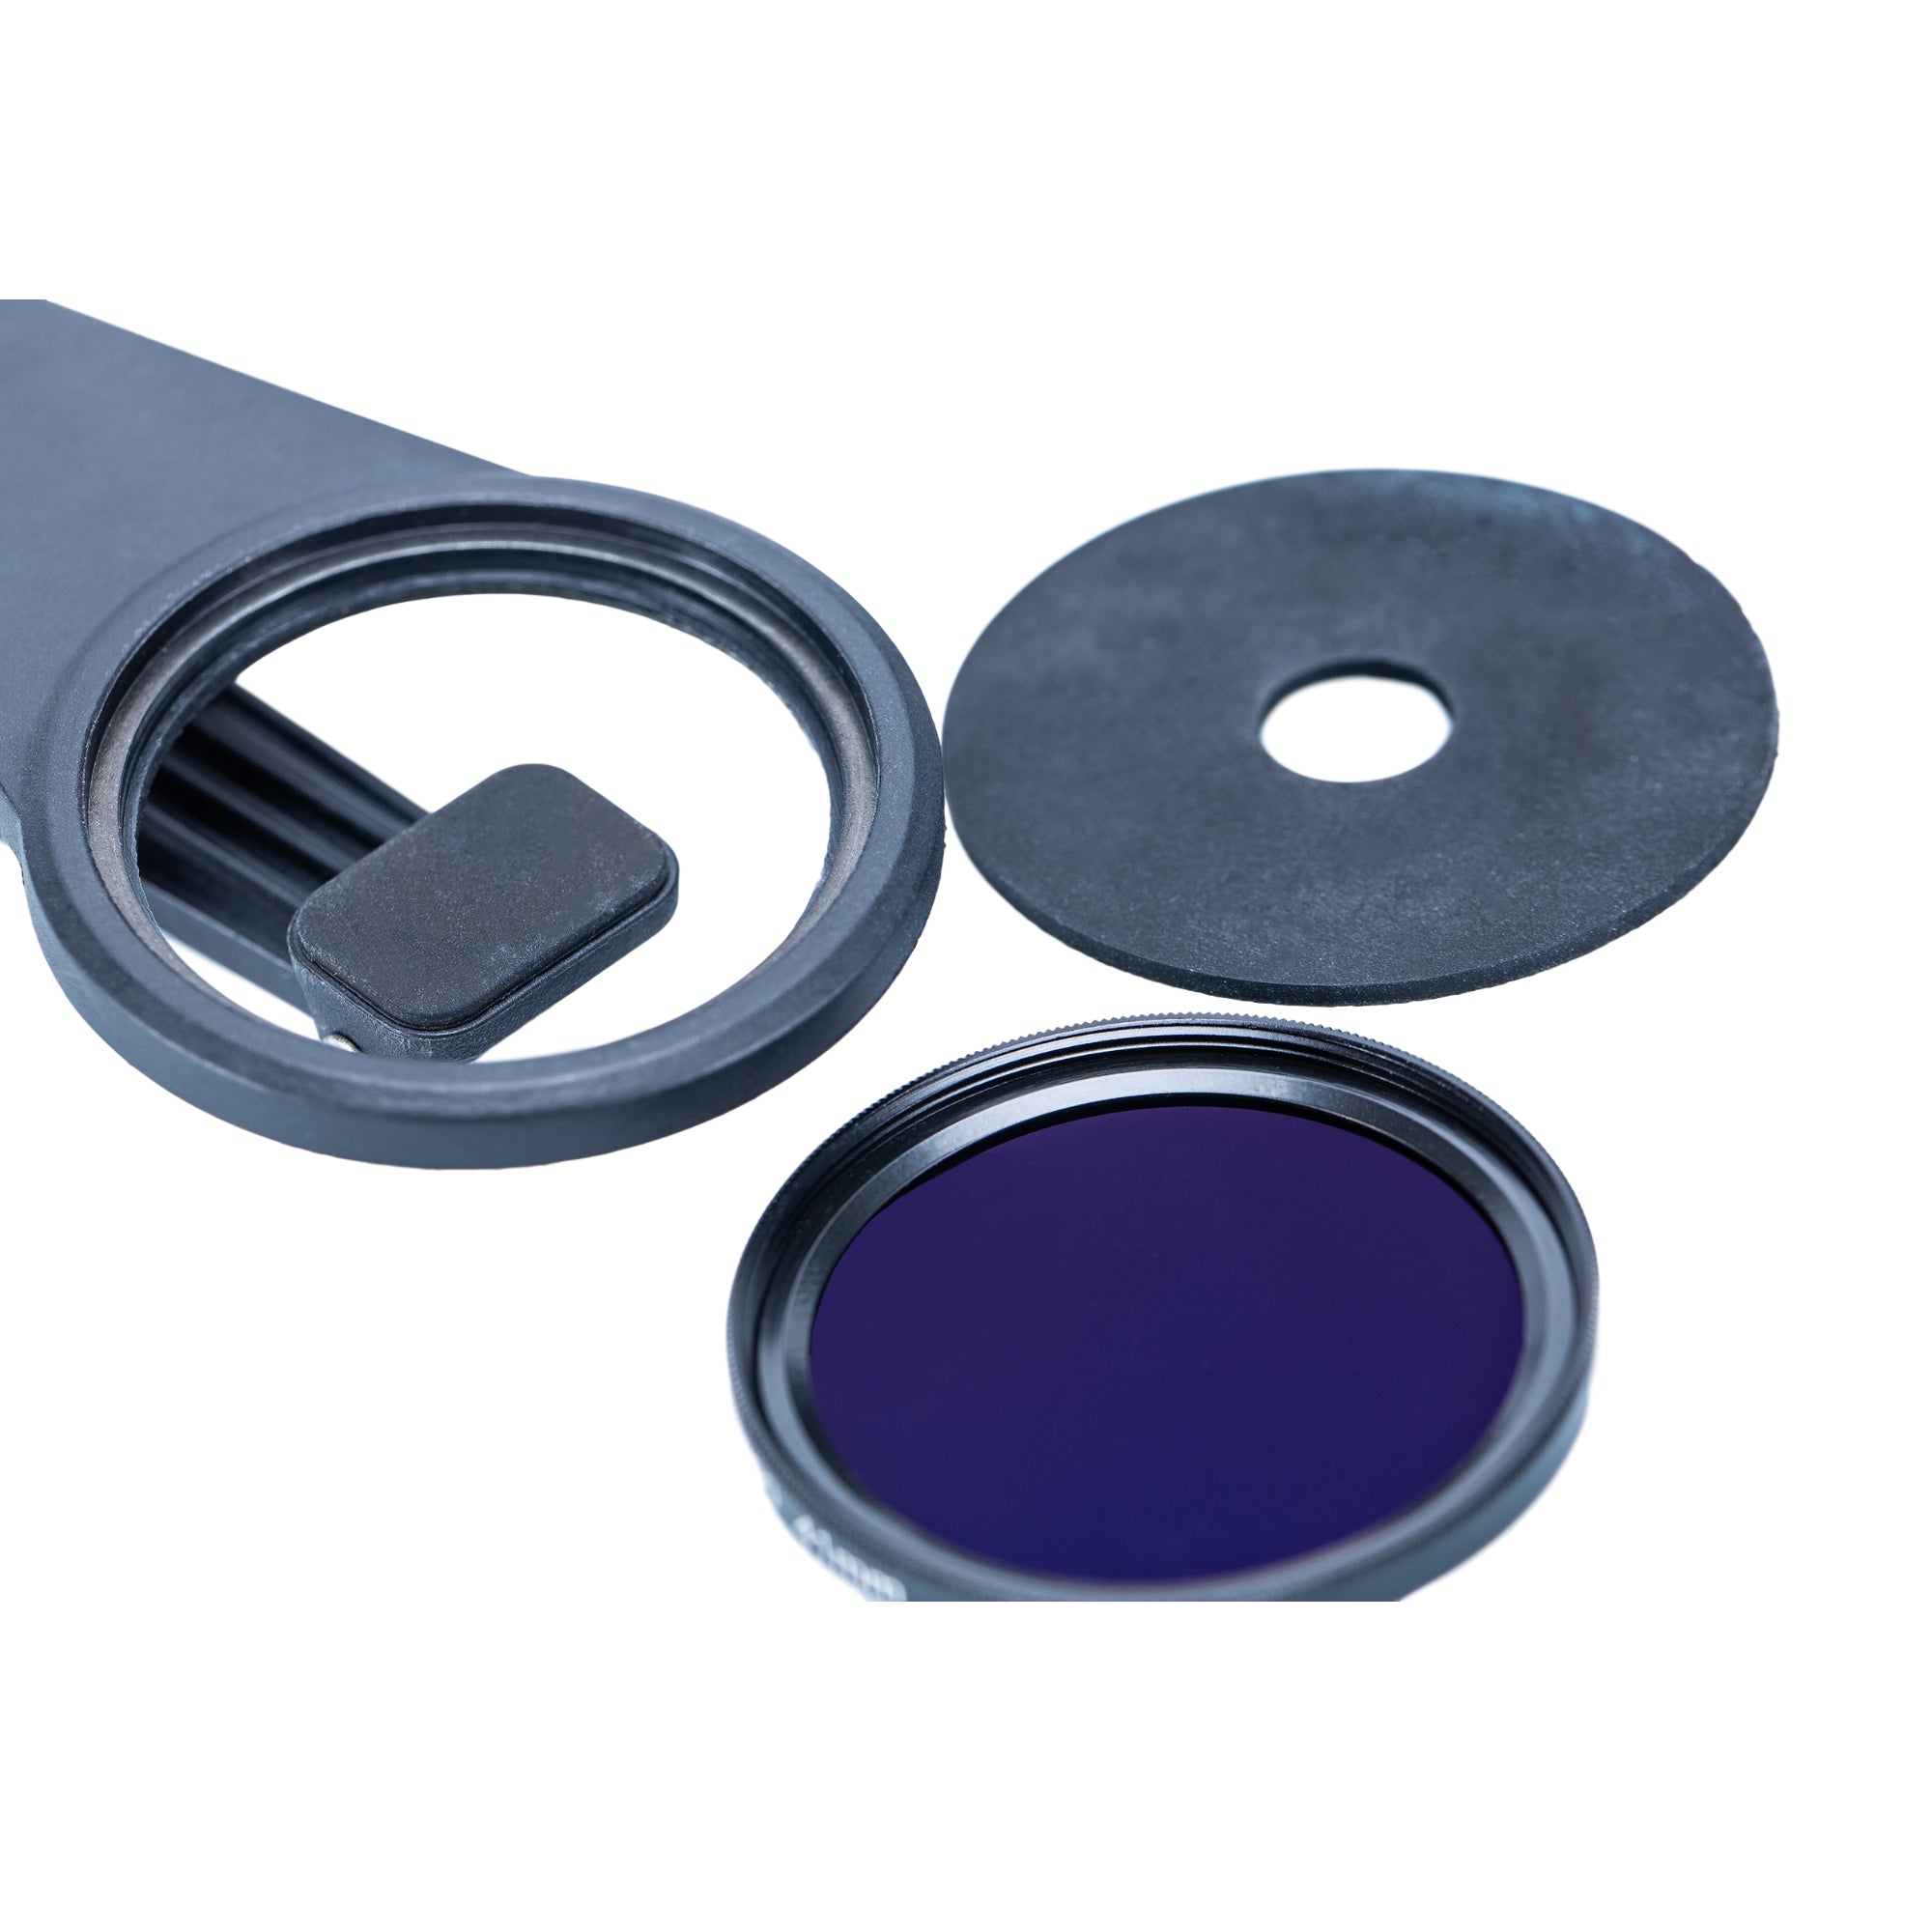 Kase Magnetic Clip for Kase Magnetic Filters